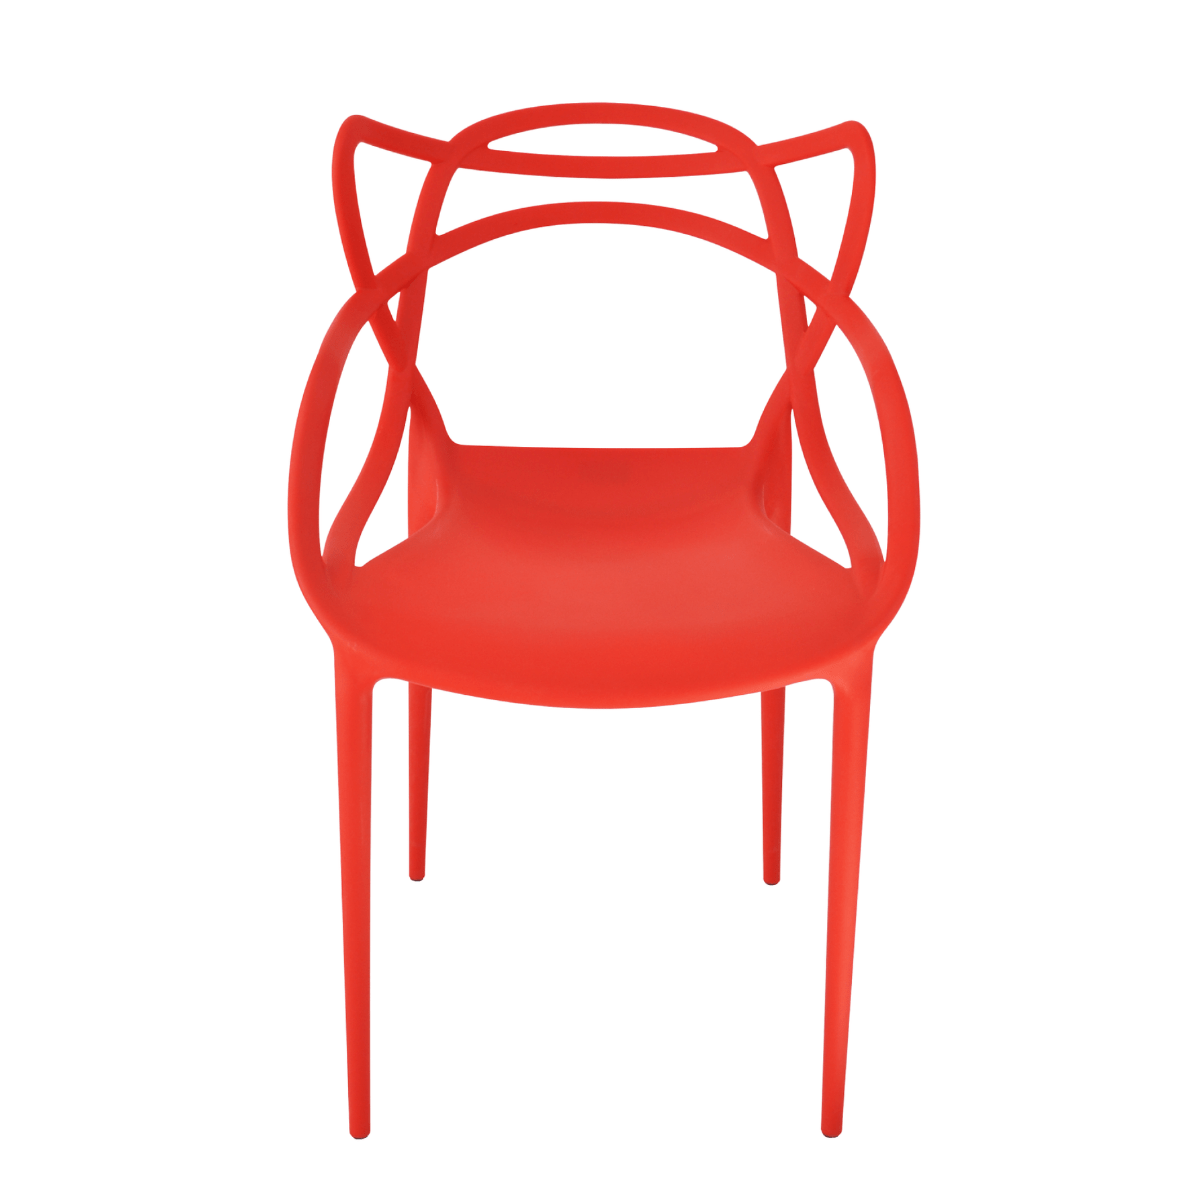 Cadeira Allegra Vermelha - Top Chairs